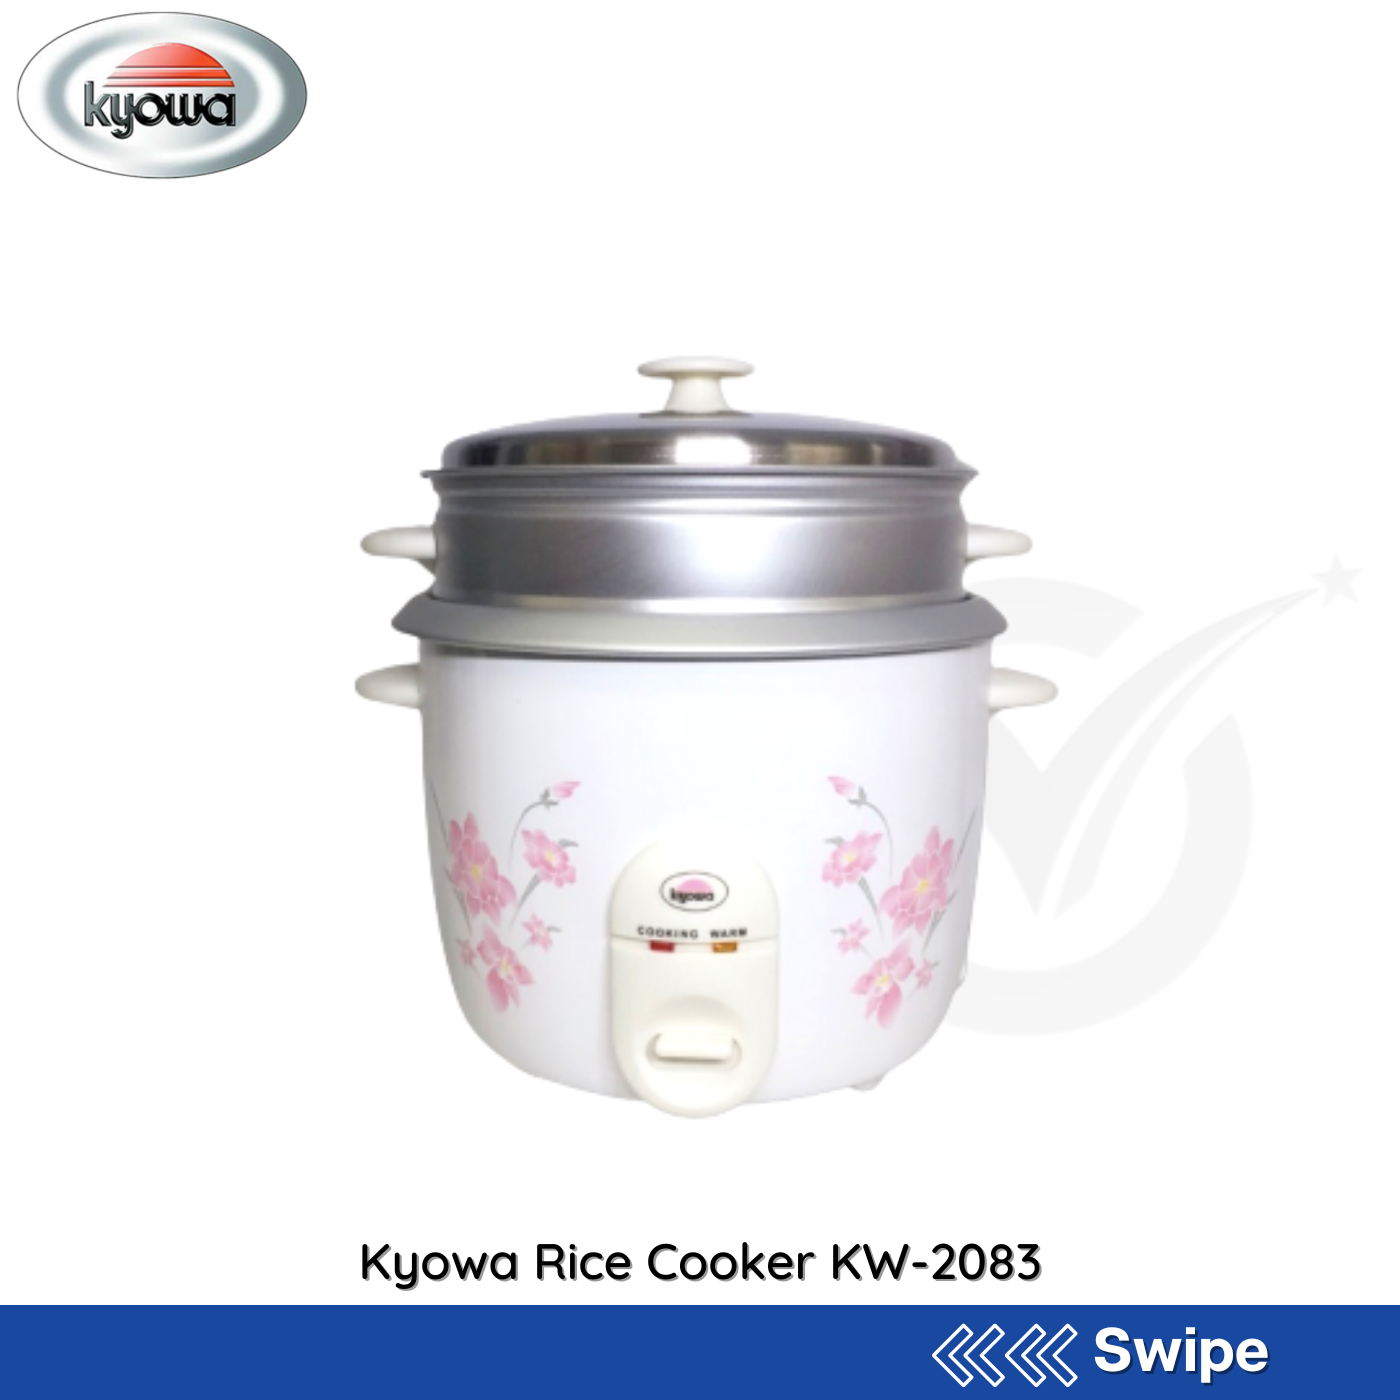 Kyowa Rice Cooker KW-2083